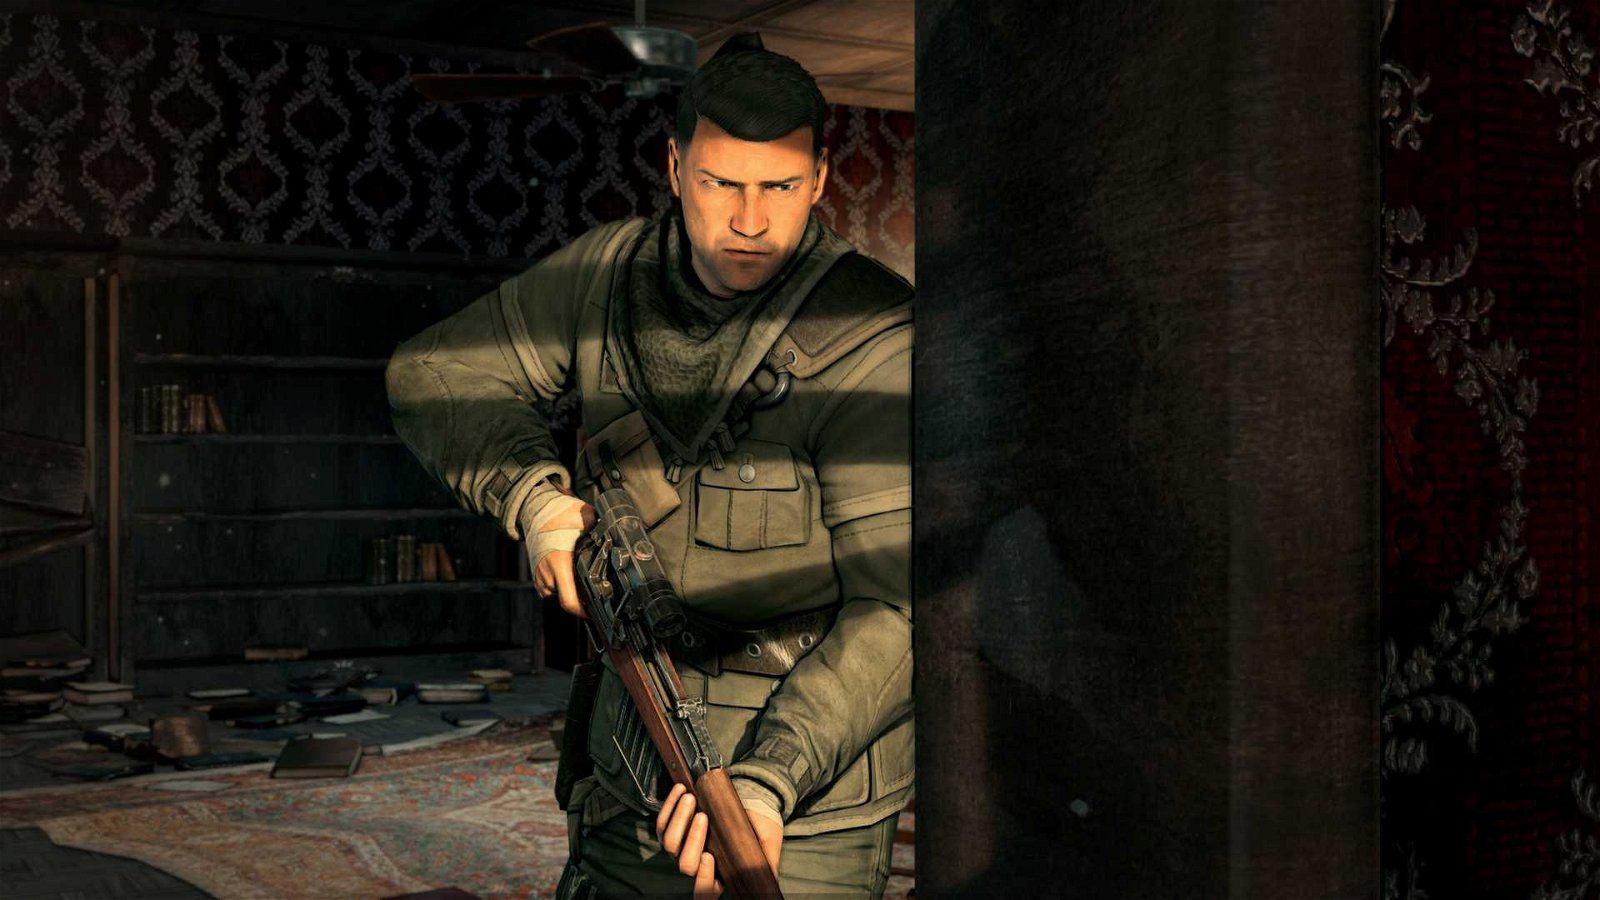 Sniper Elite V2: Prime immagini ufficiali della Remaster